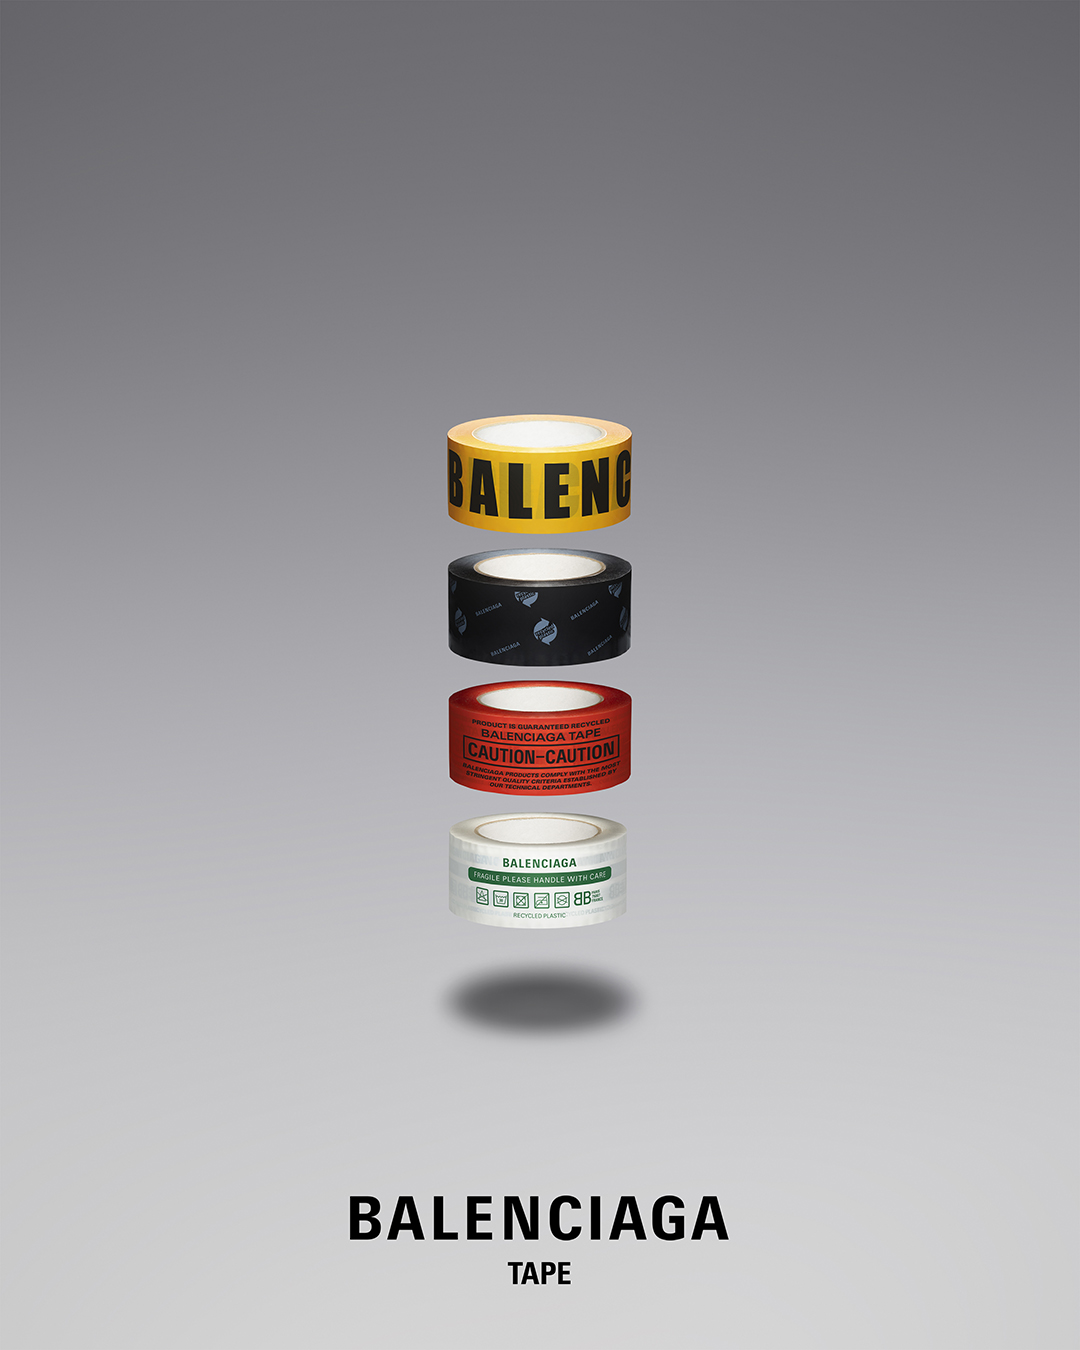 ホリデーギフトにも最適な『Balenciaga Object』の新作アイテム